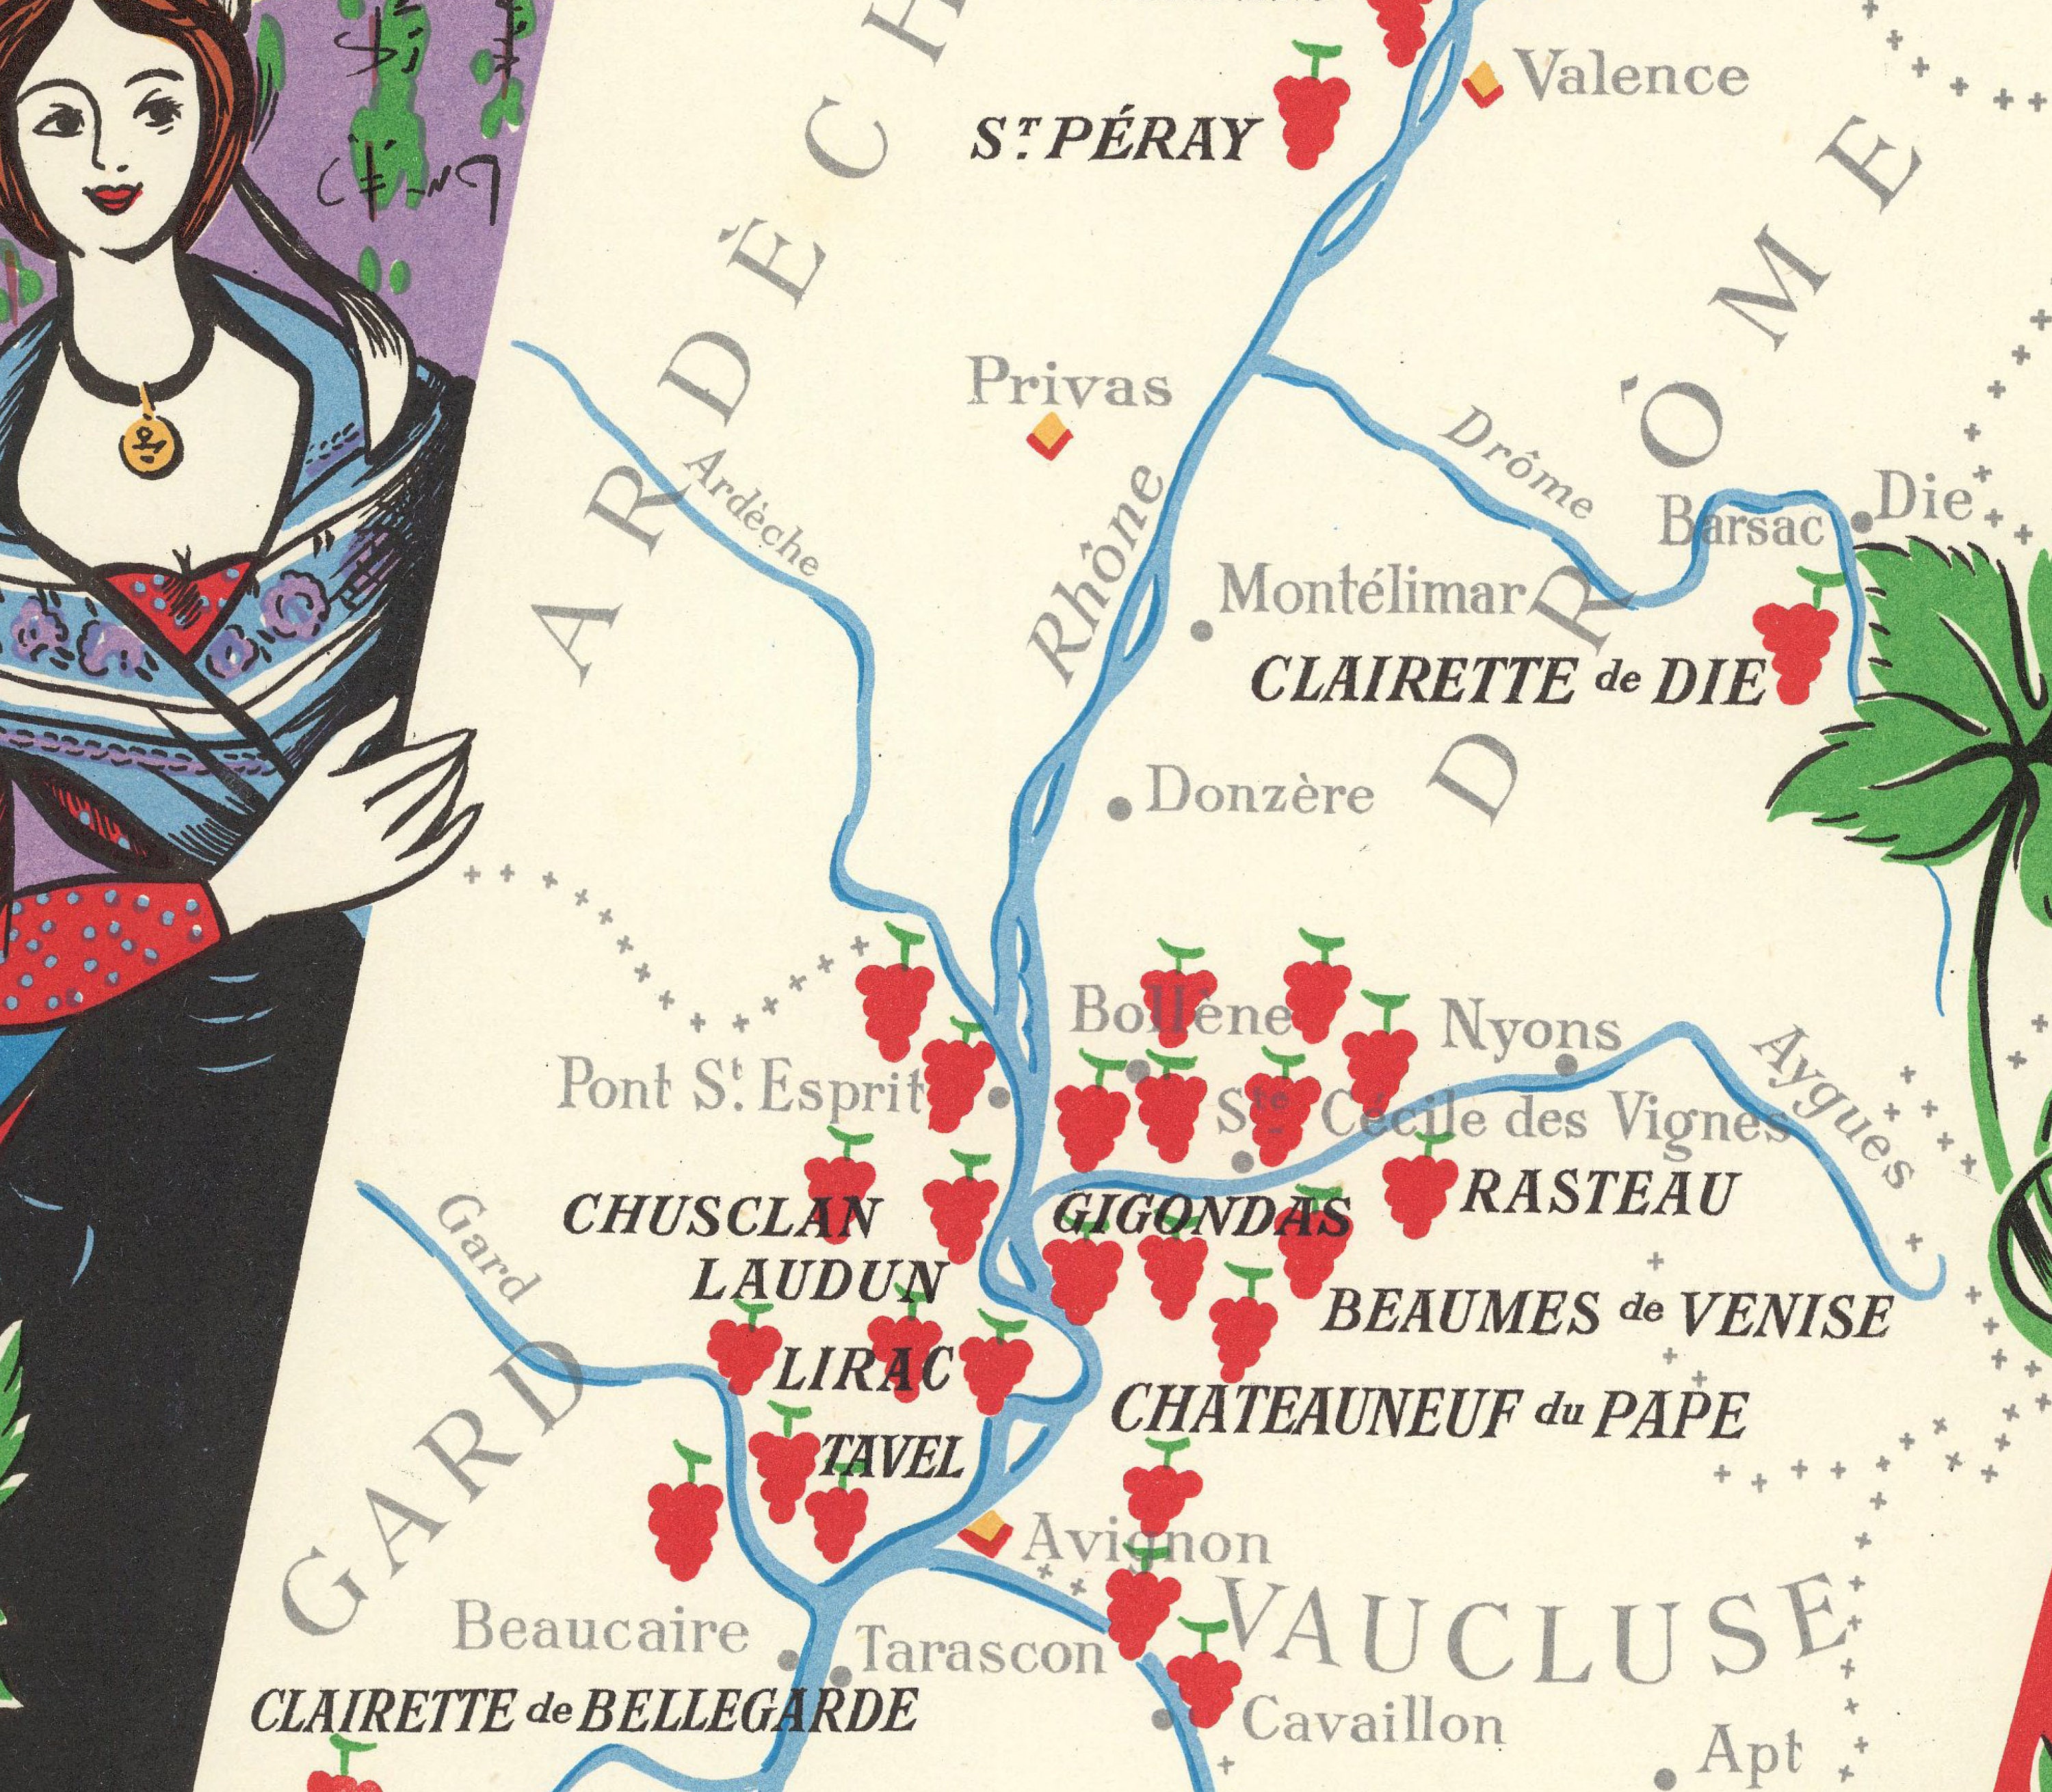 Les Vignobles de France  Vins d'Algerie by Remy Hetreau, 1950 – the  Vintage Map Shop, Inc.